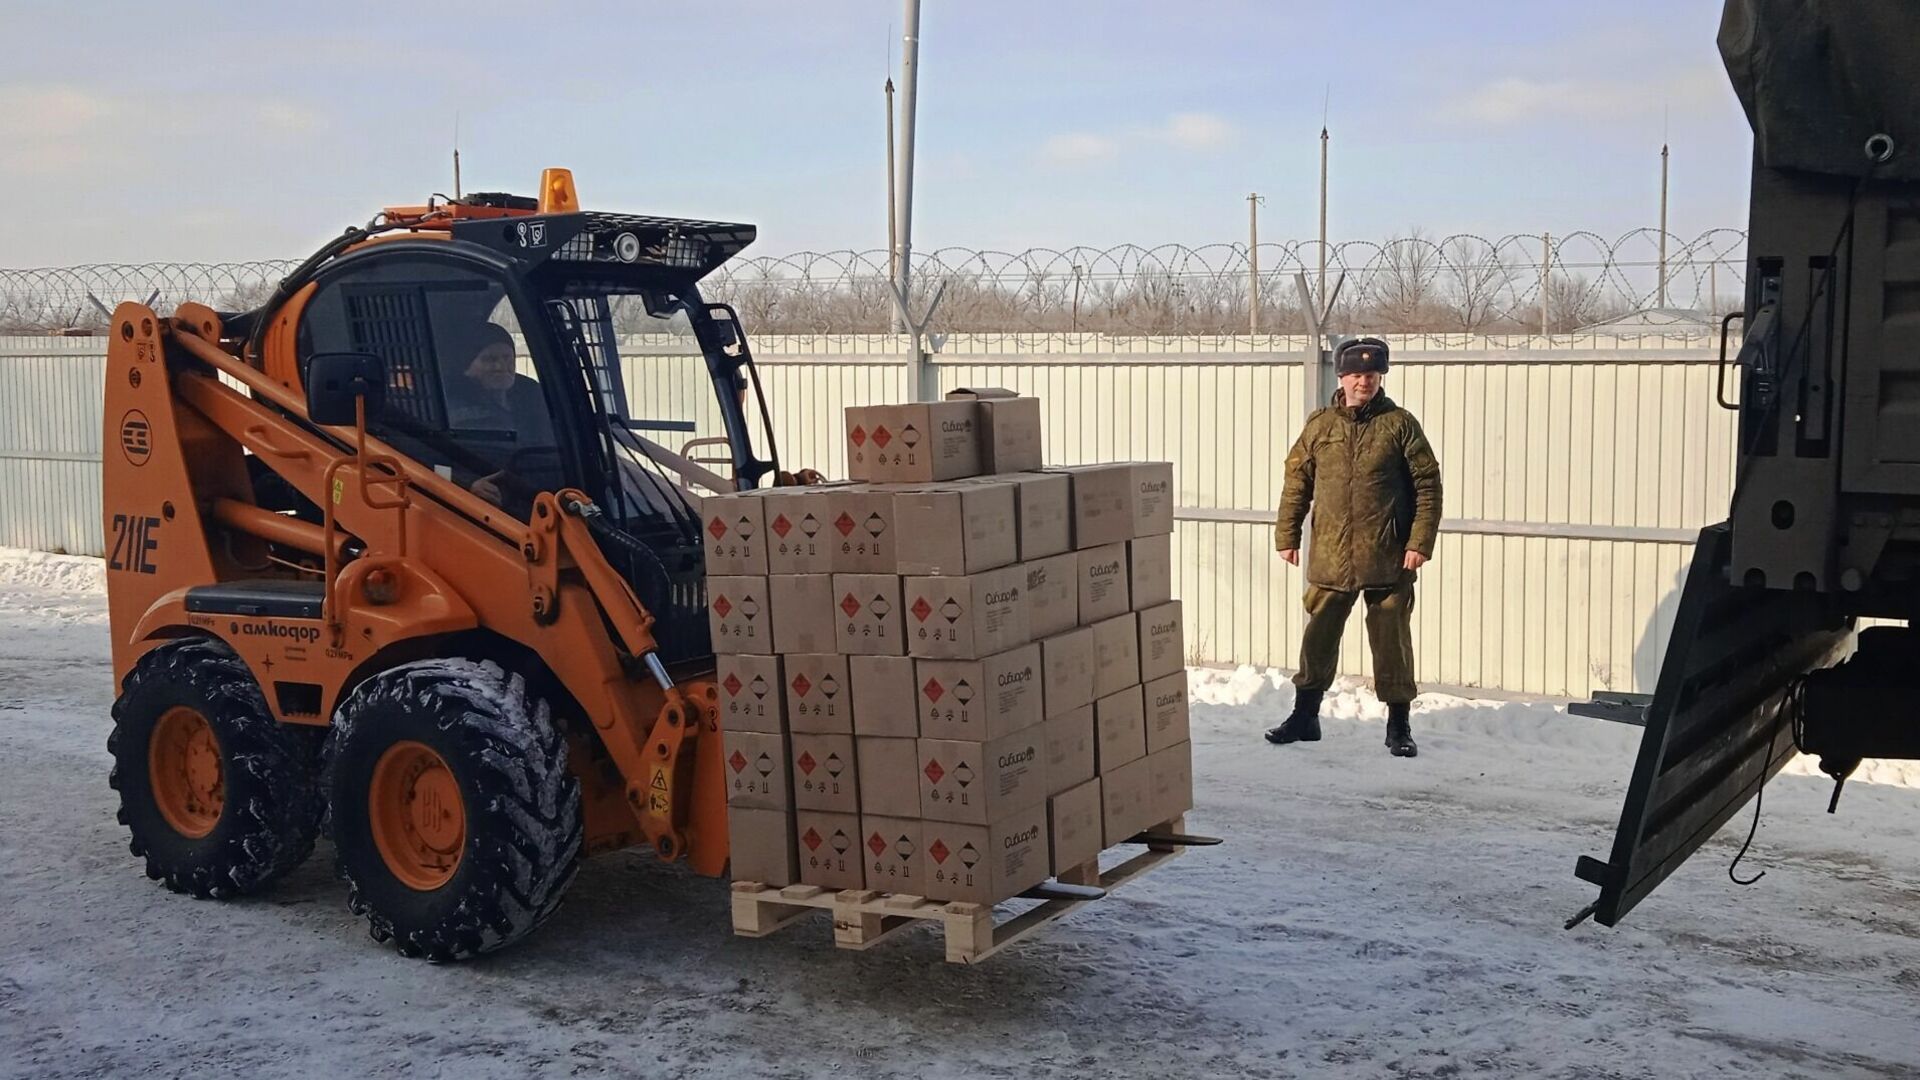 Кувалды, молотки и пилы: в зону СВО из Волгограда отправили строительные инструменты